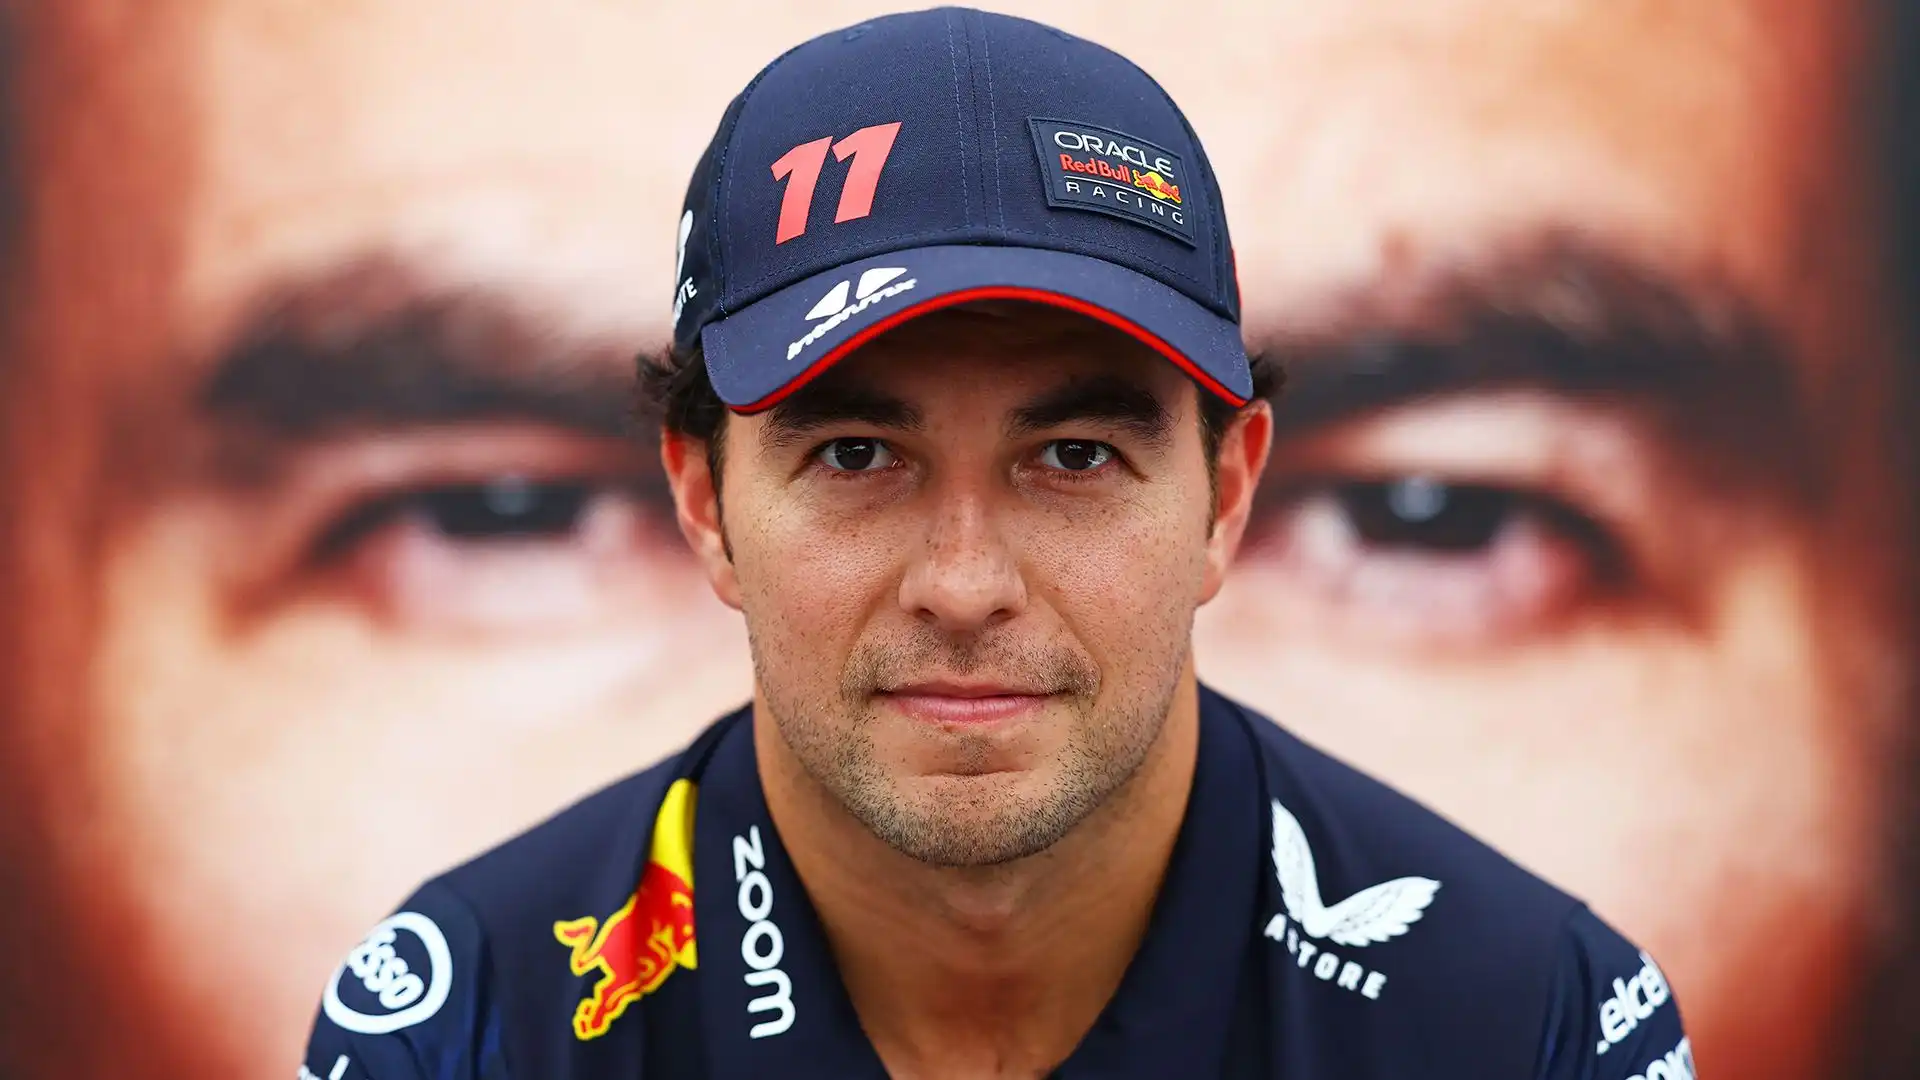 Checo è alla Red Bull dal 2021: nella scorsa stagione è arrivato terzo nella classifica generale dietro a Verstappen e Leclerc